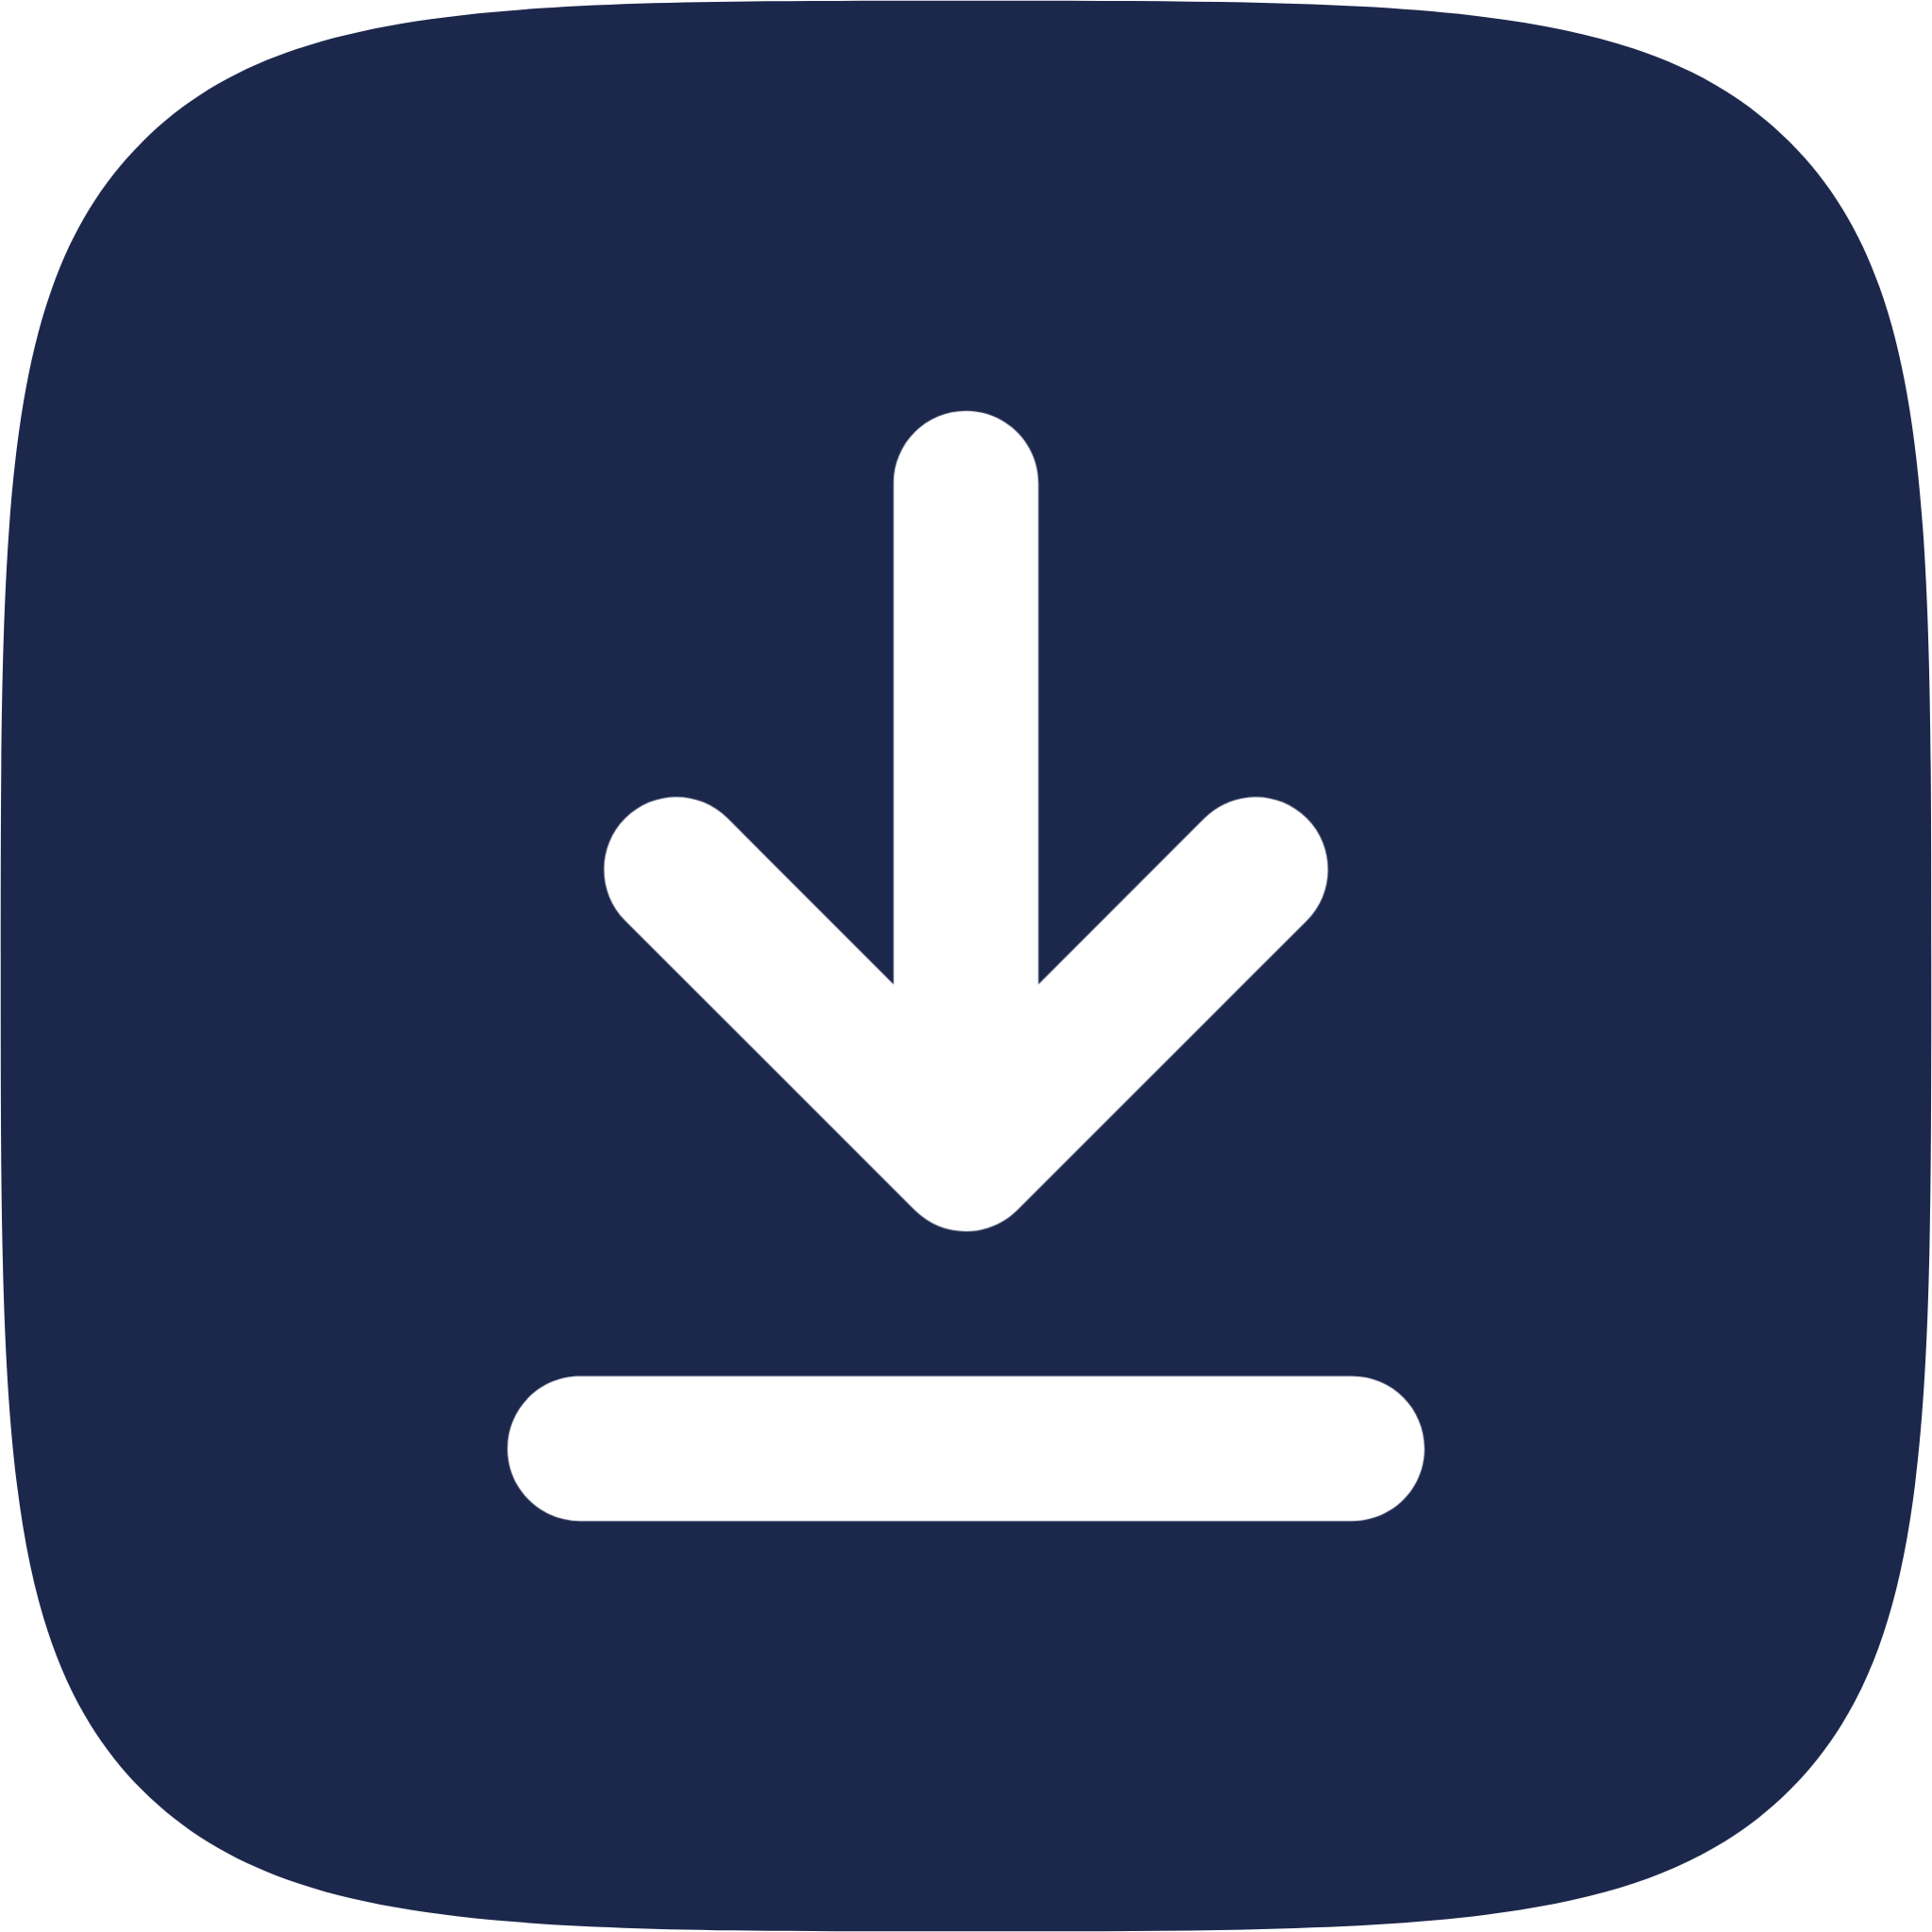 Download Square icon